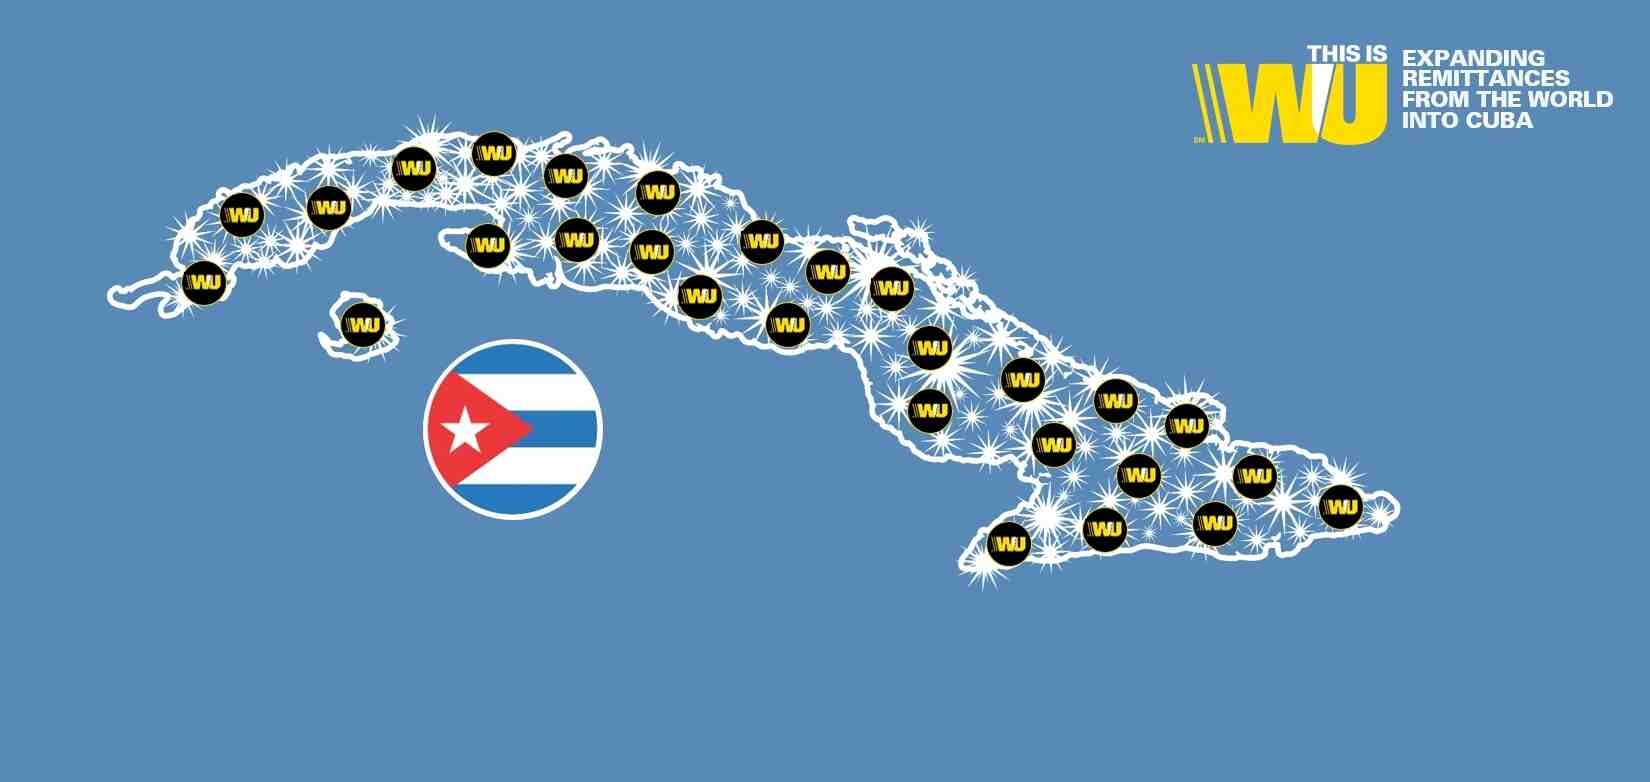 Comment fonctionne Cuba ?